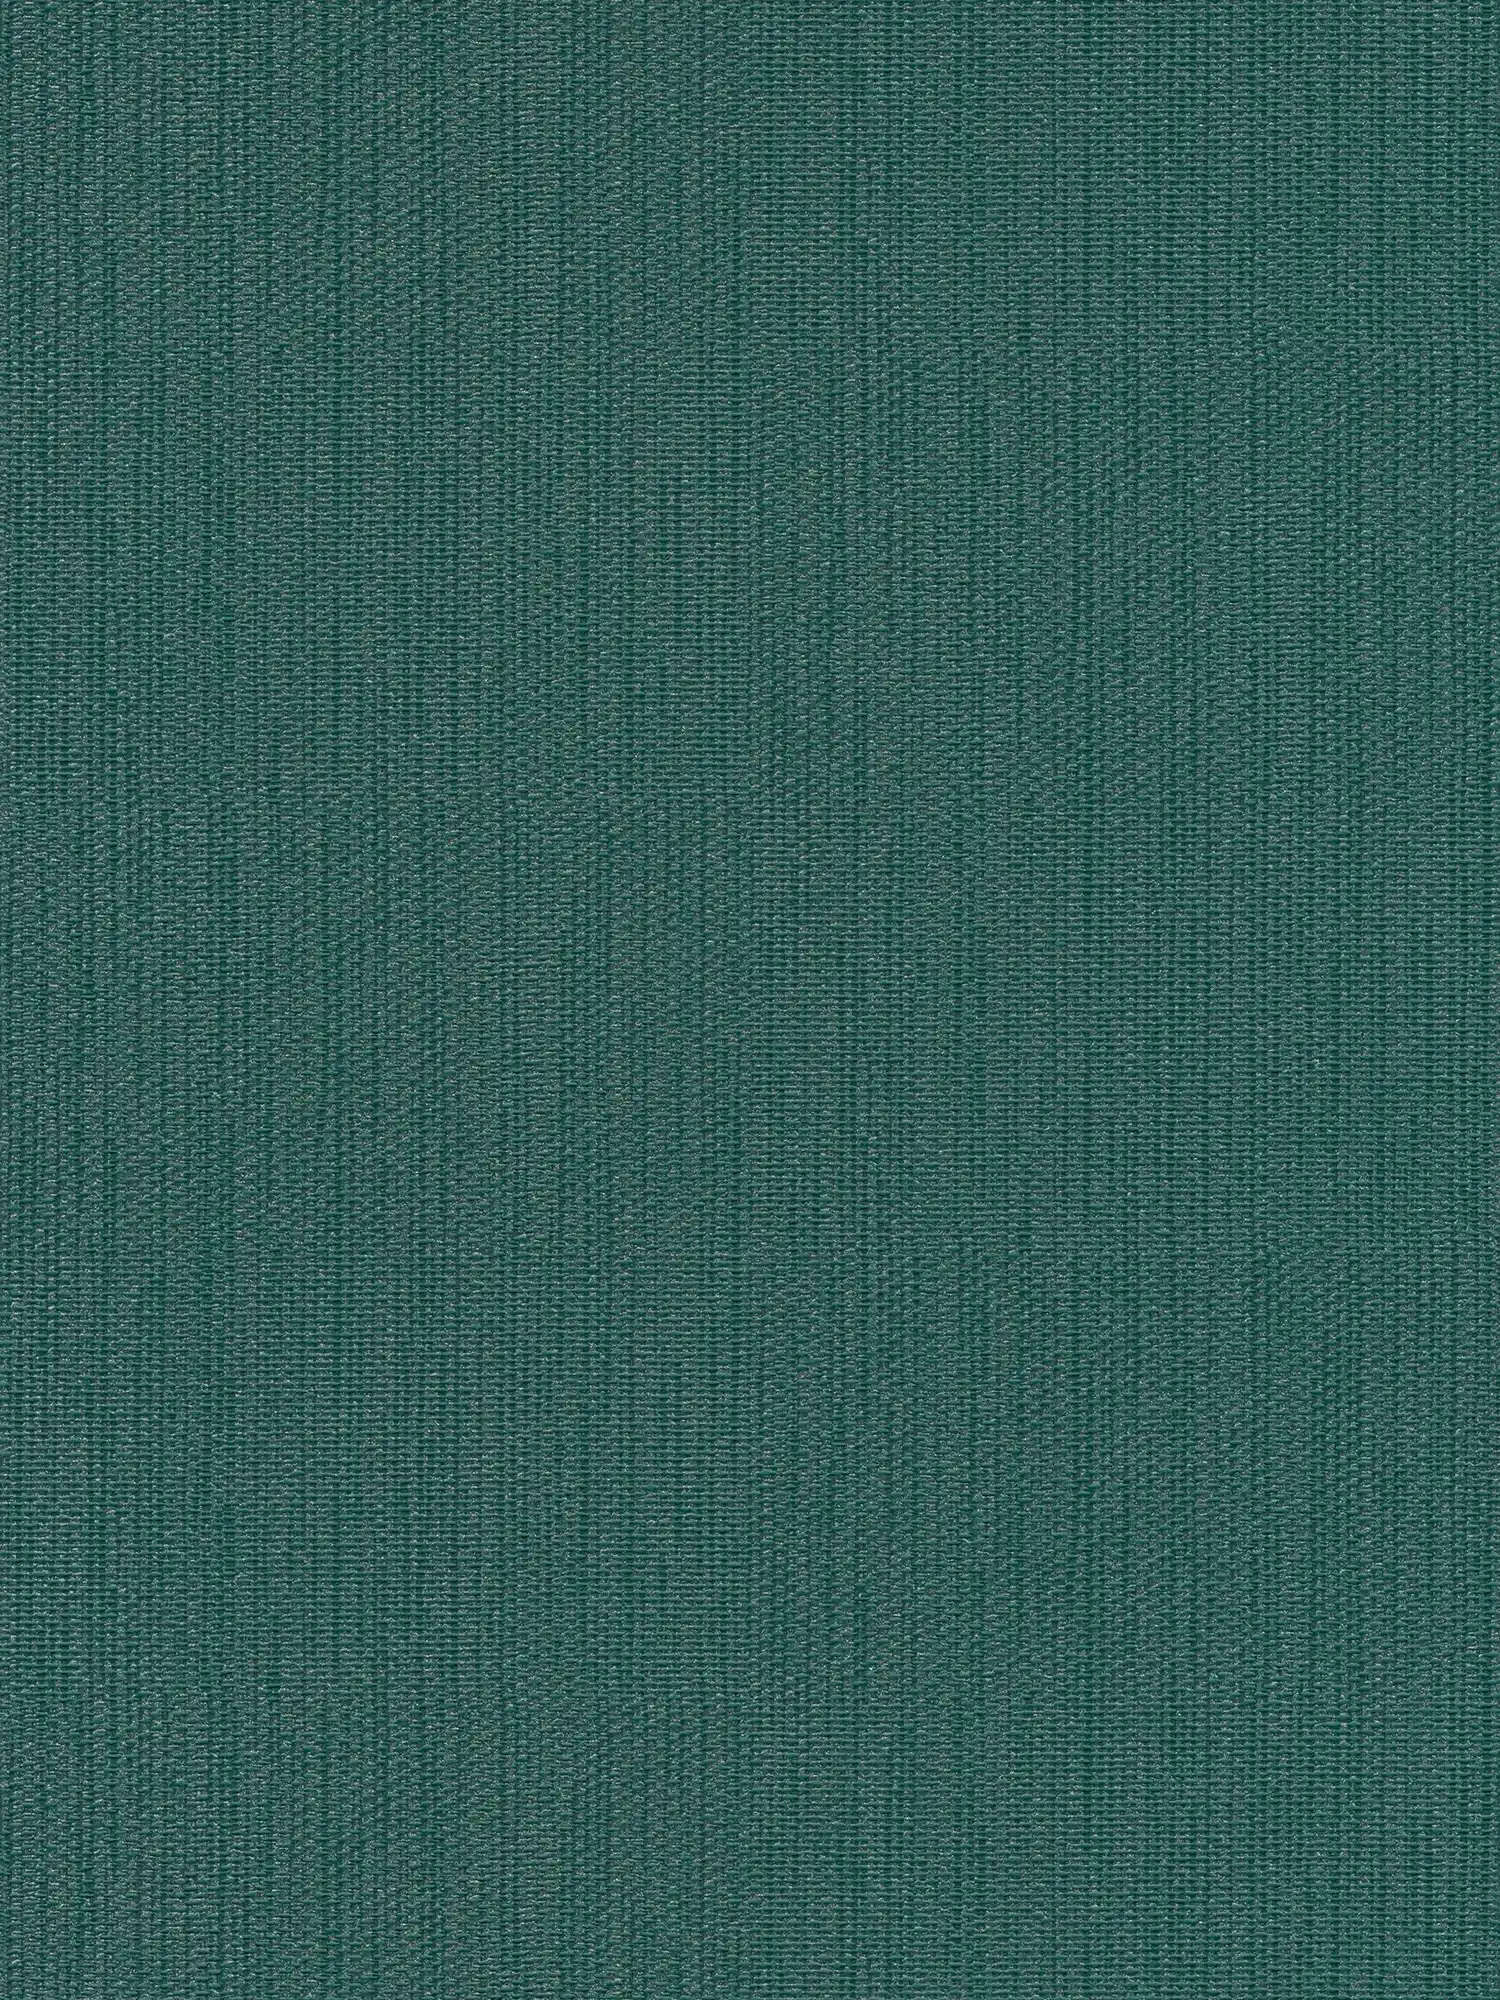 papier peint en papier intissé uni aspect textile - vert, vert foncé
